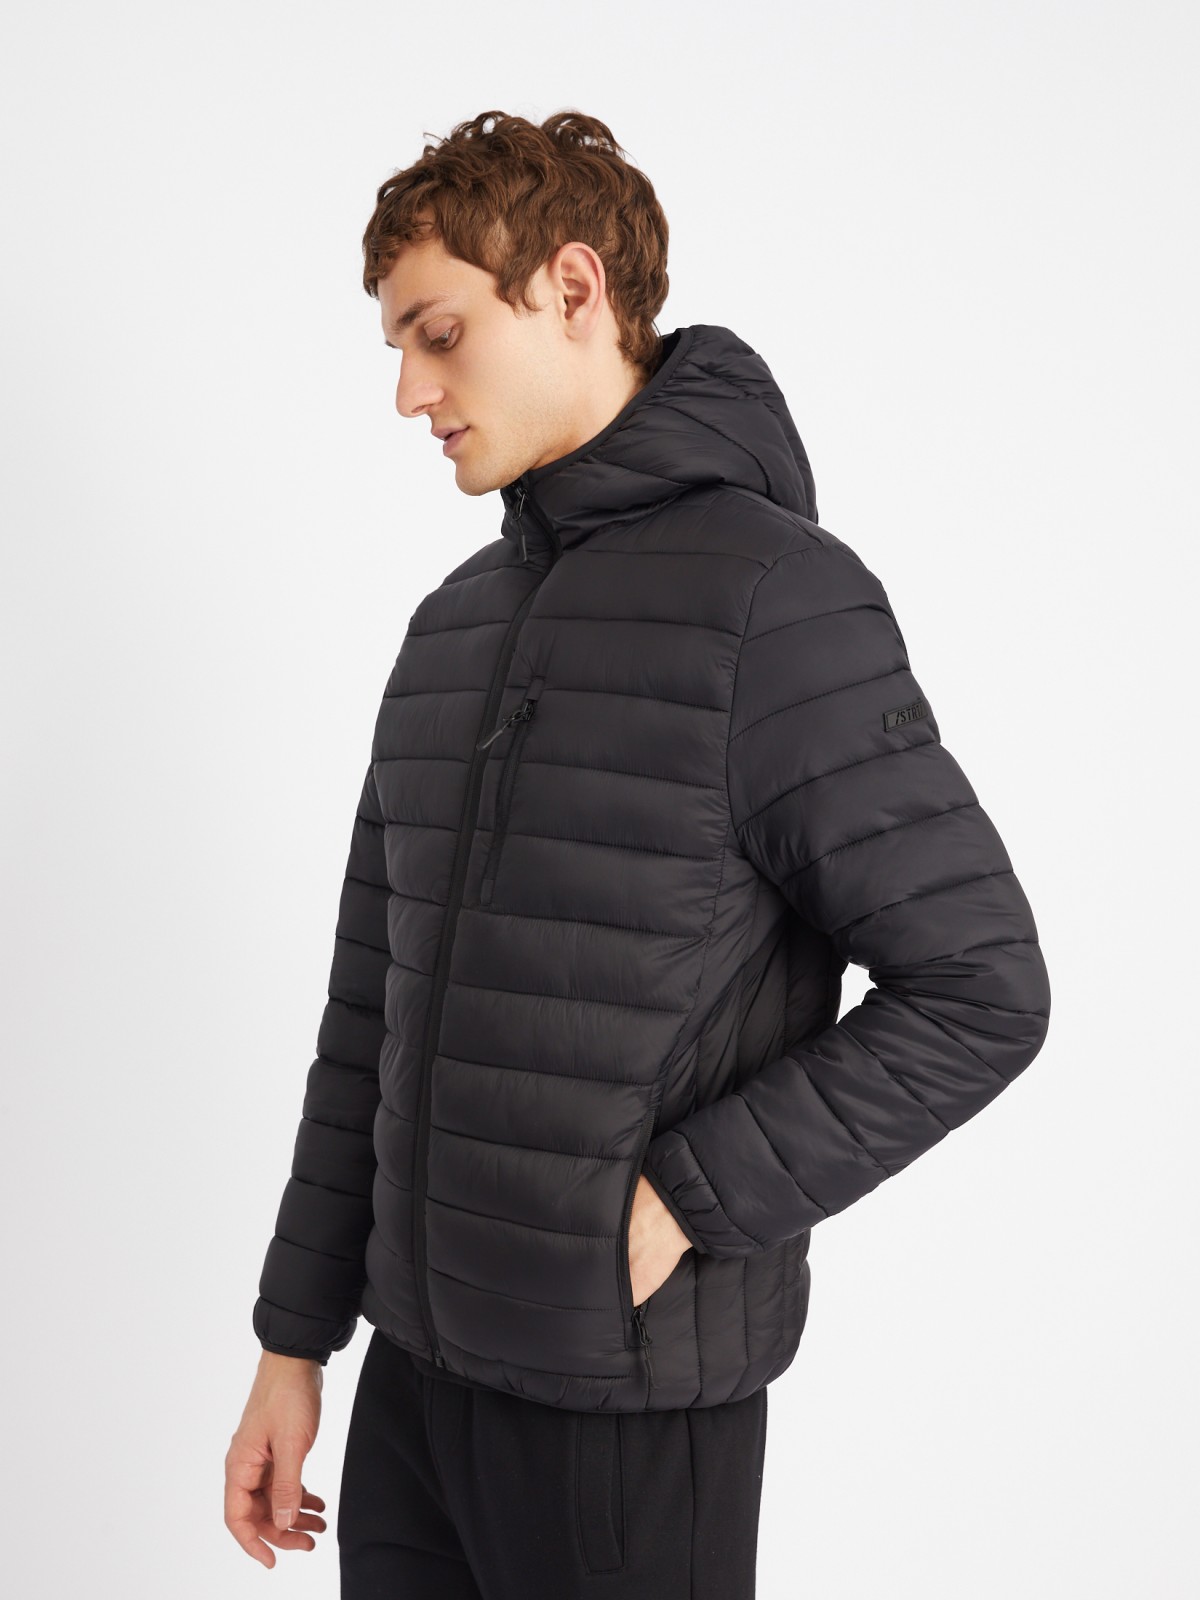 Лёгкая утеплённая стёганая куртка на молнии с капюшоном zolla 013335114014, цвет черный, размер S - фото 3